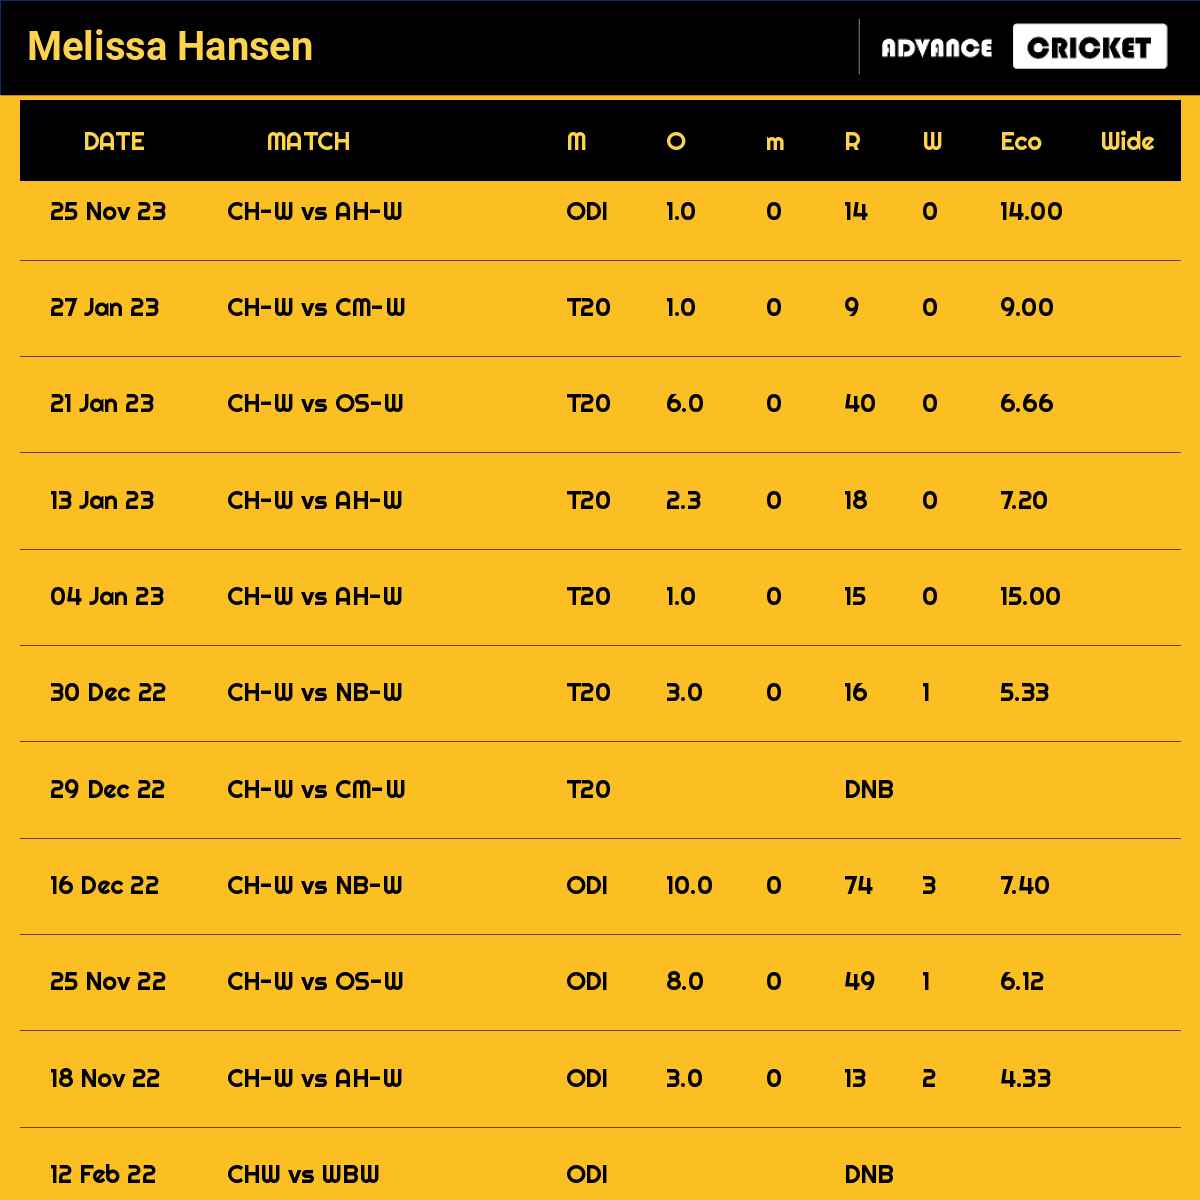 Melissa Hansen recent matches